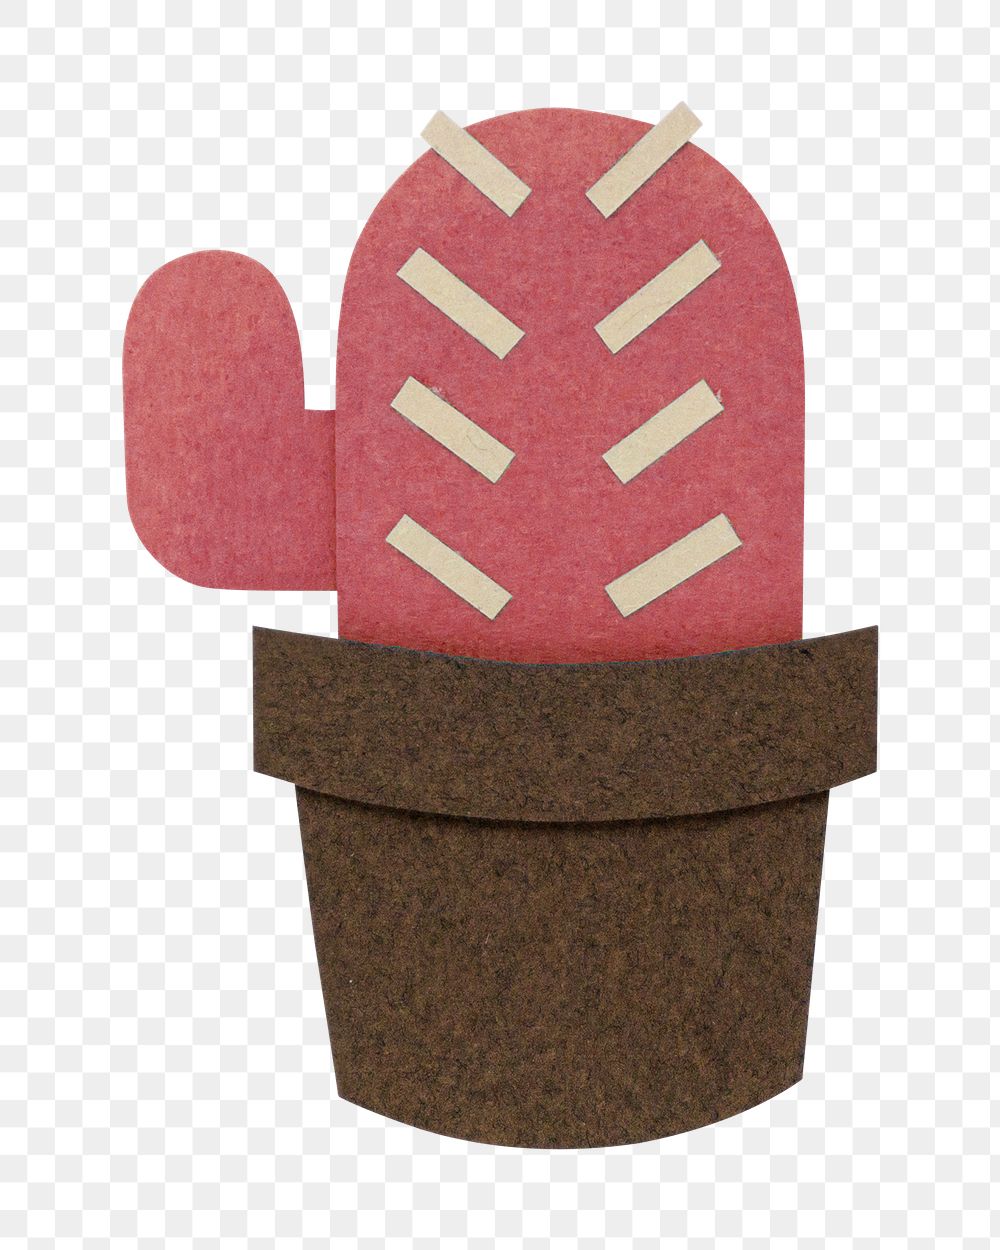 Red cactus paper craft design element